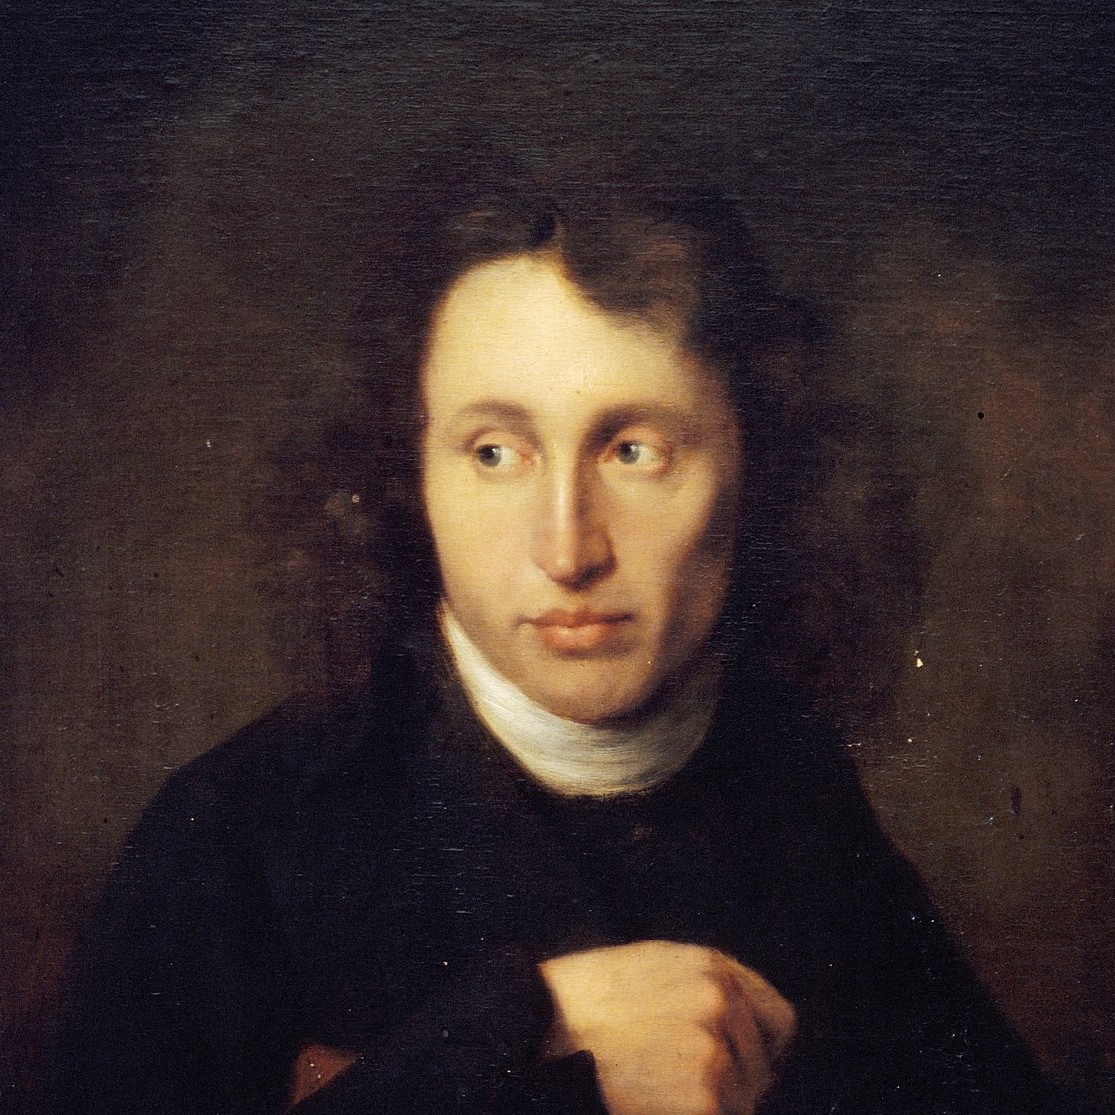 Johann Bernhard Scheffer